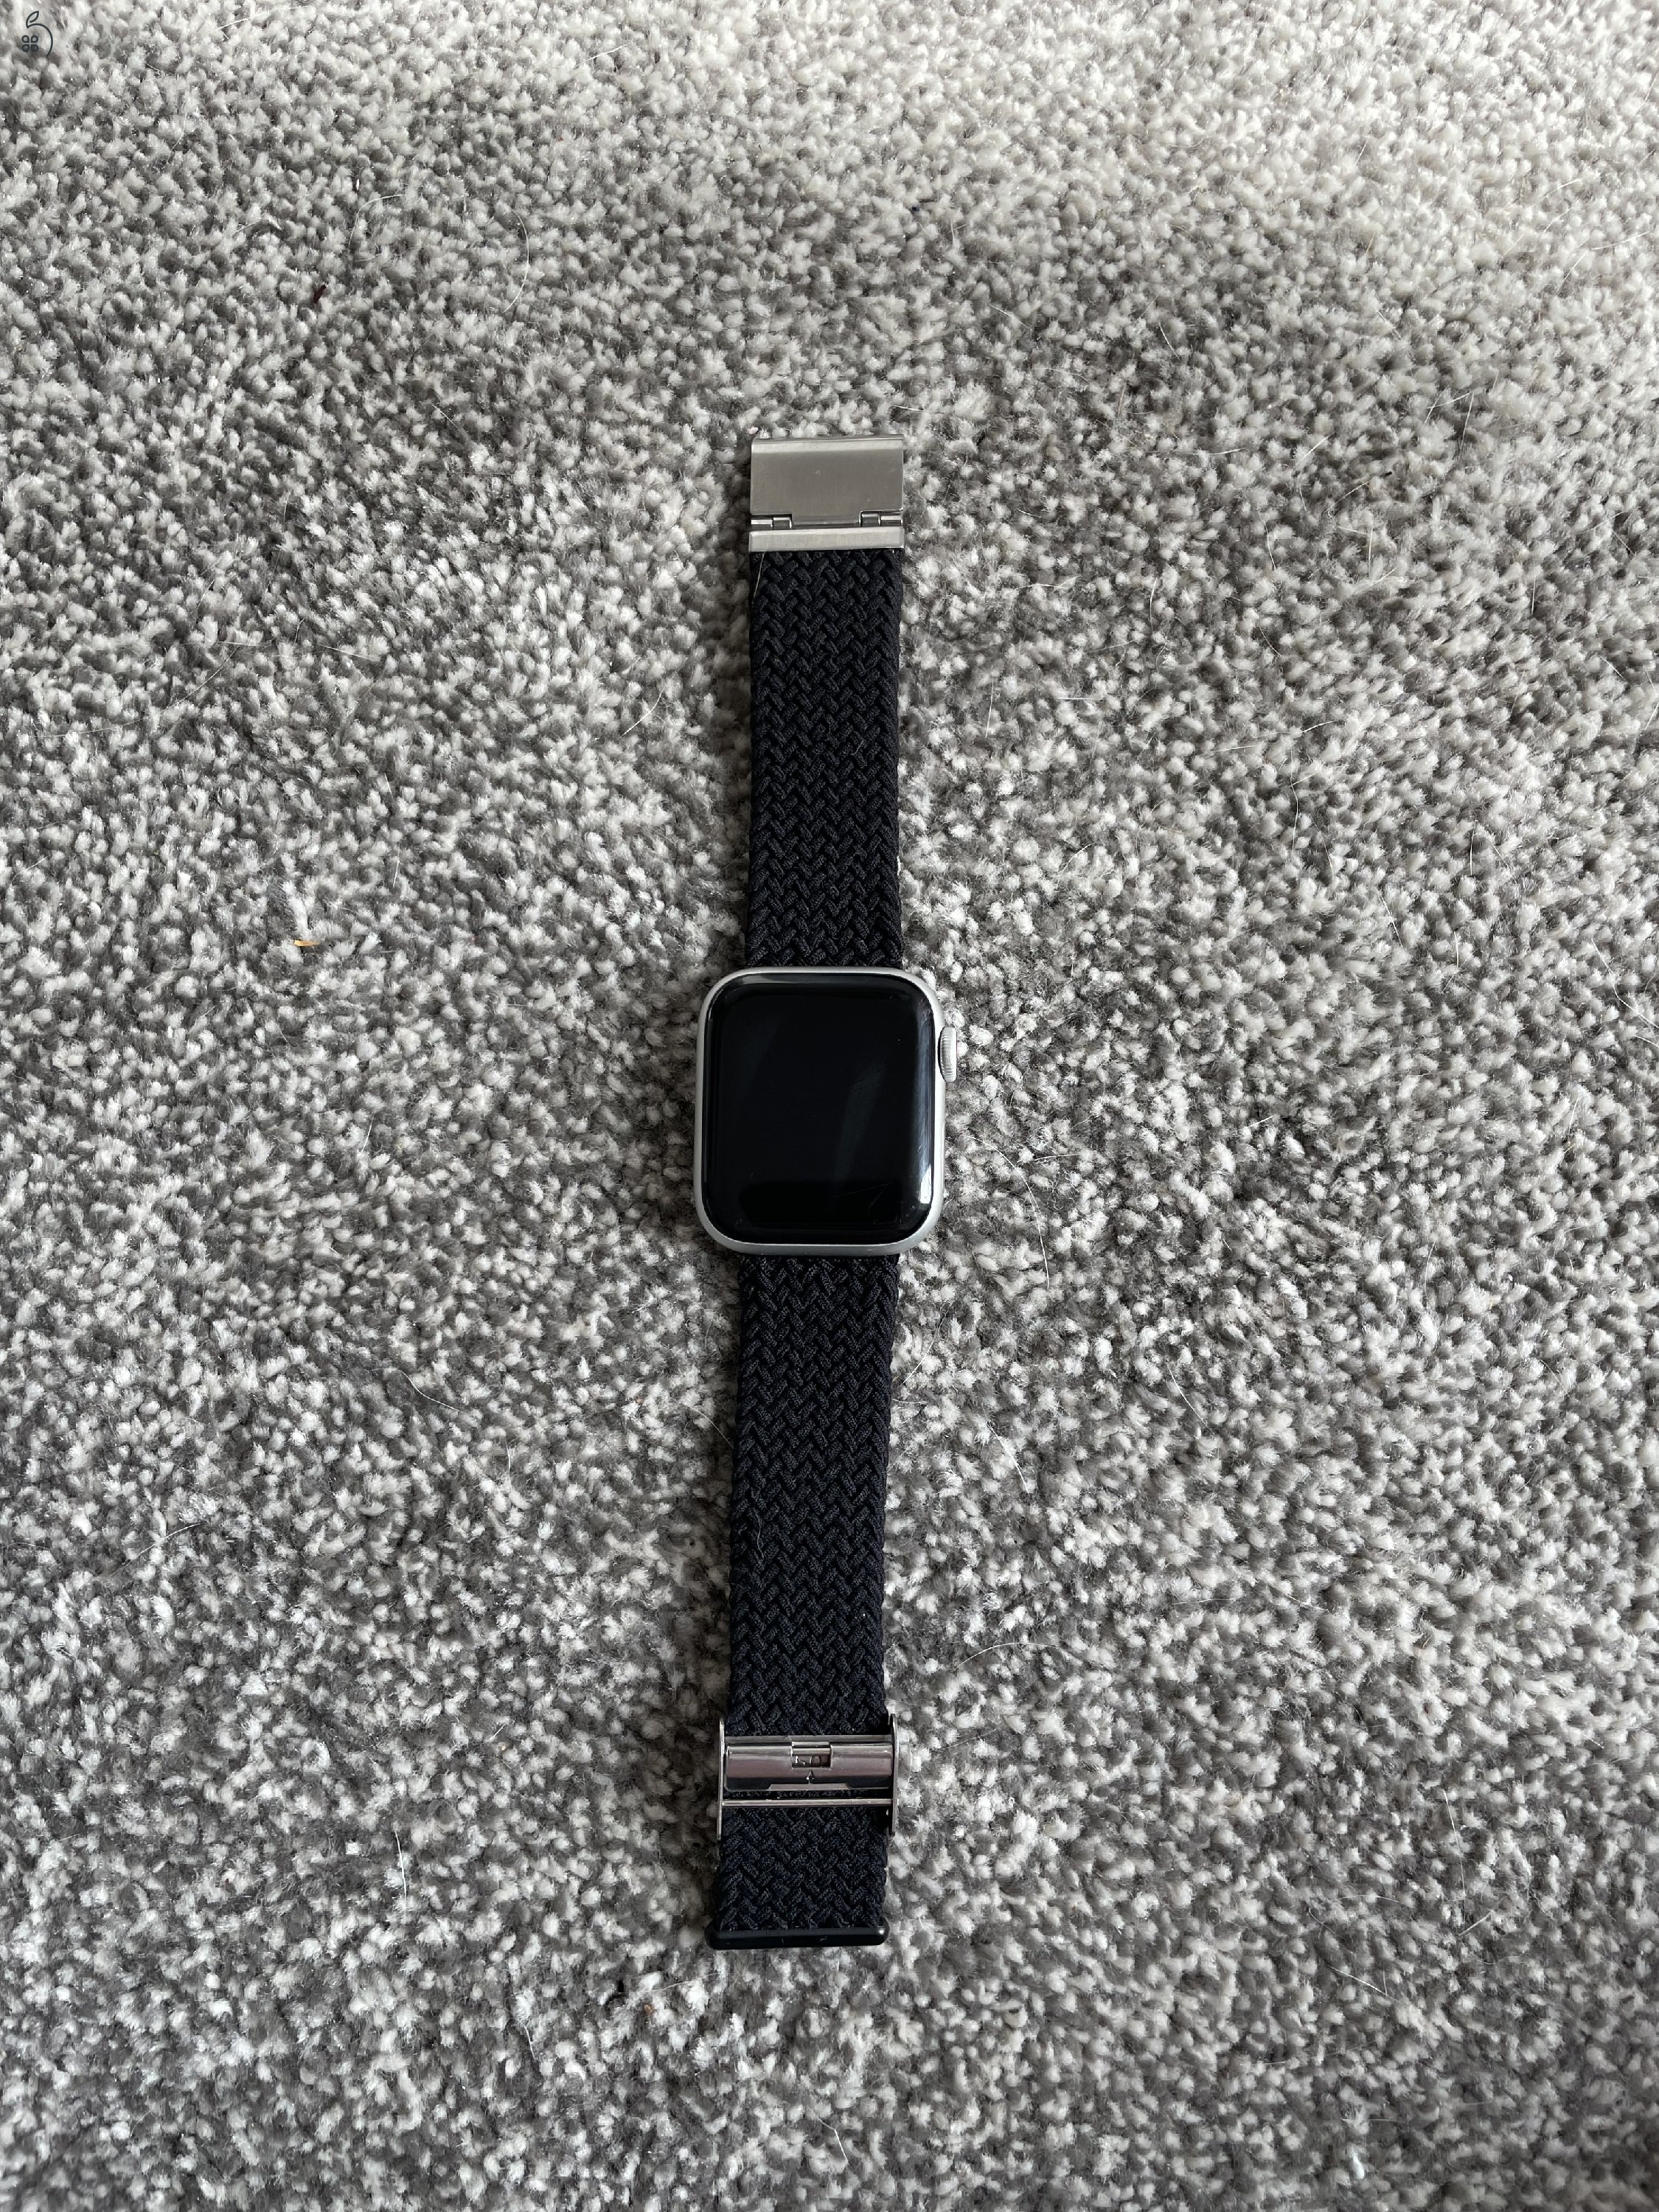 Apple Watch Series 6 Nike GPS 40mm